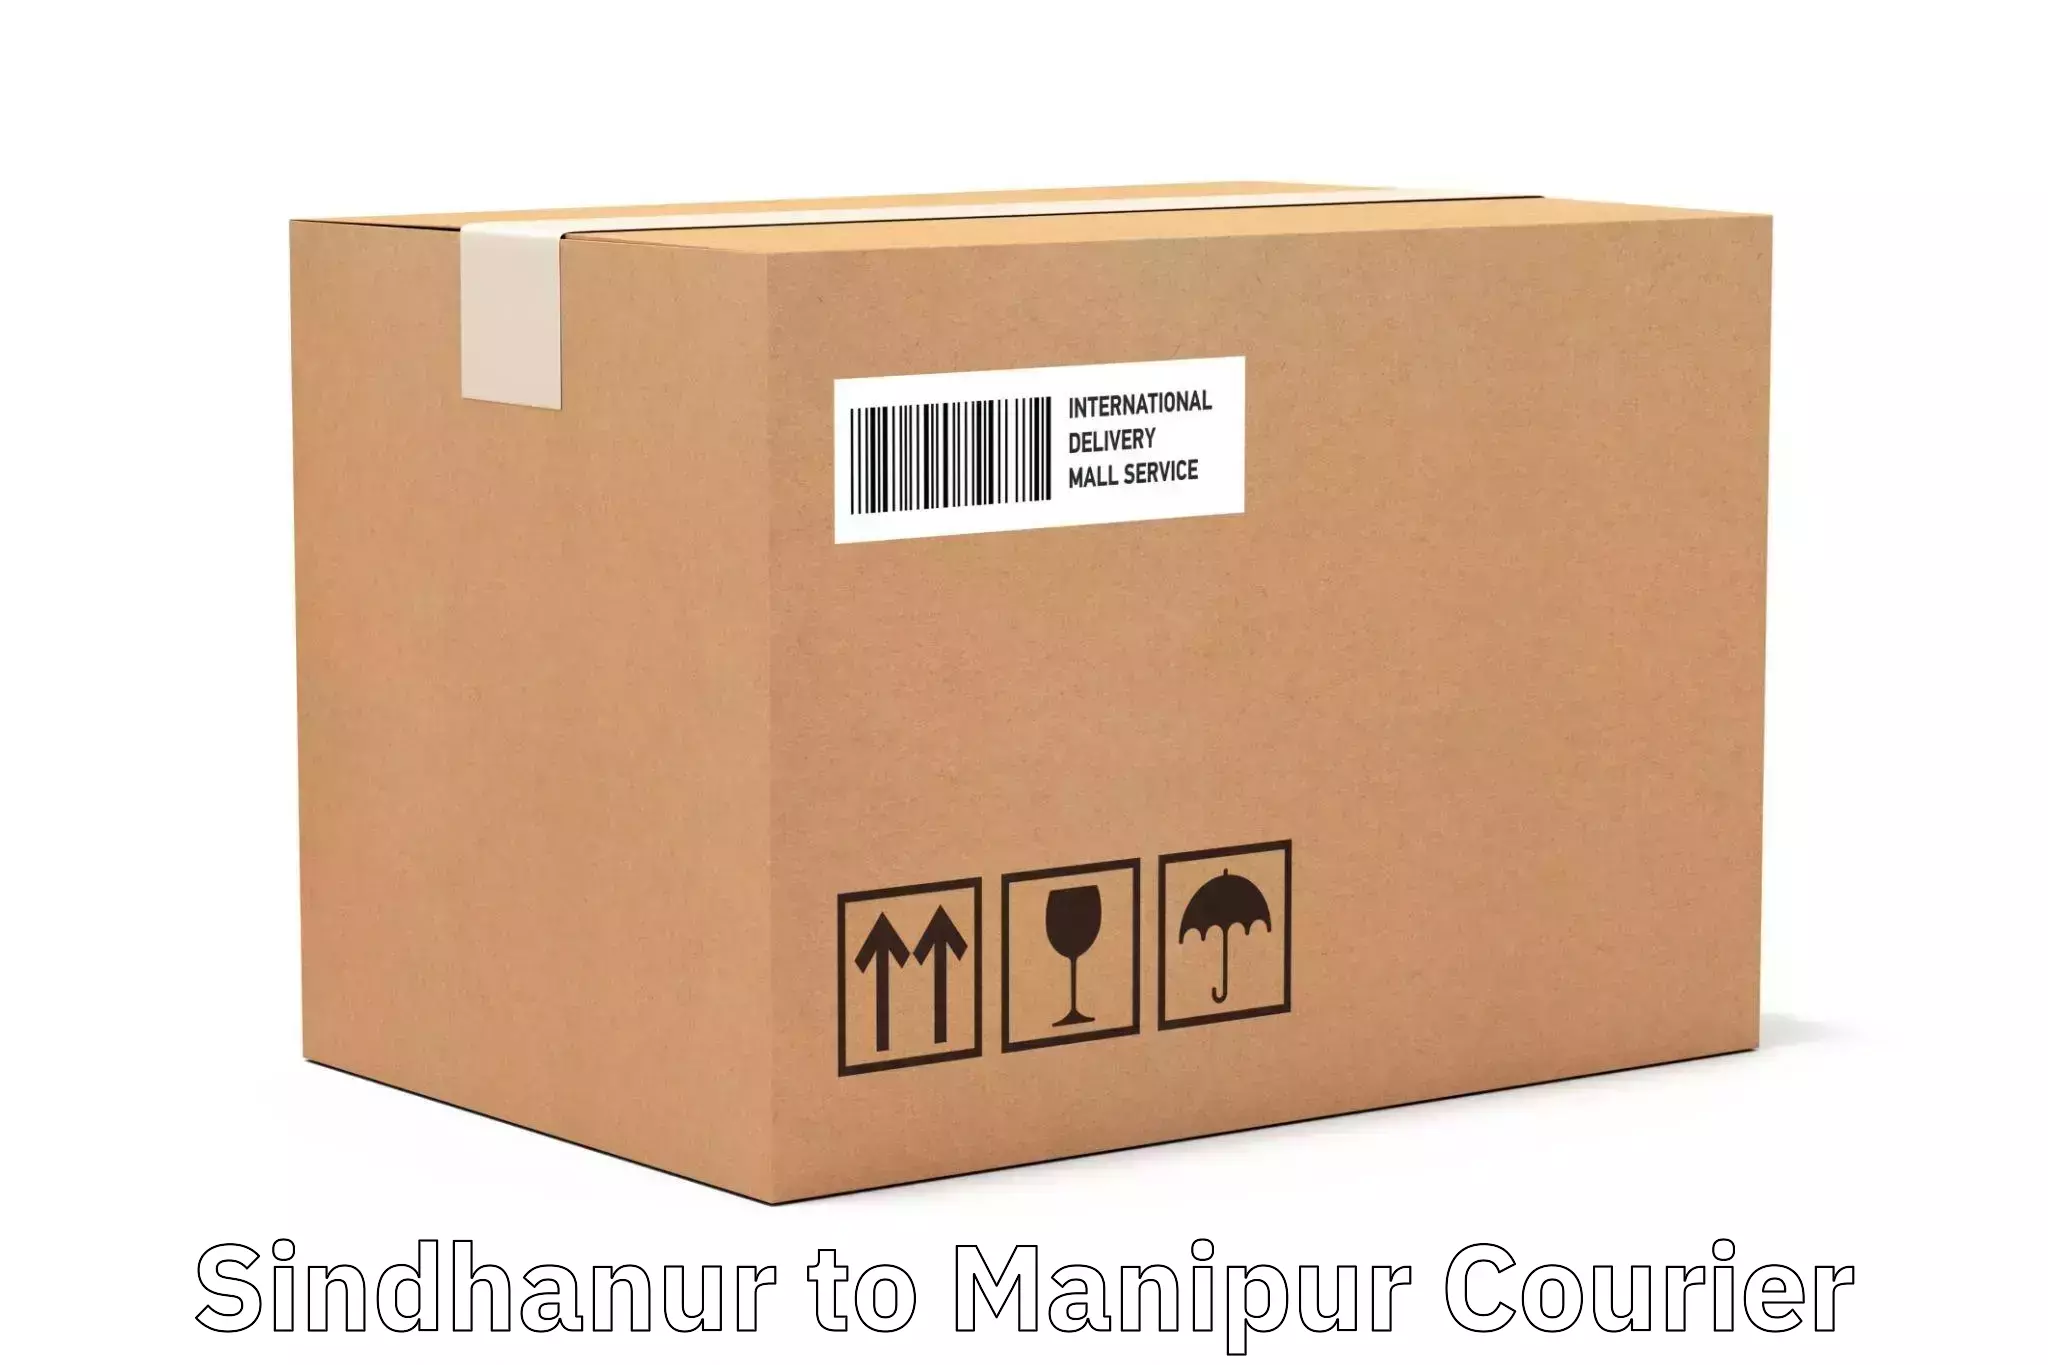 Digital courier platforms Sindhanur to Moirang